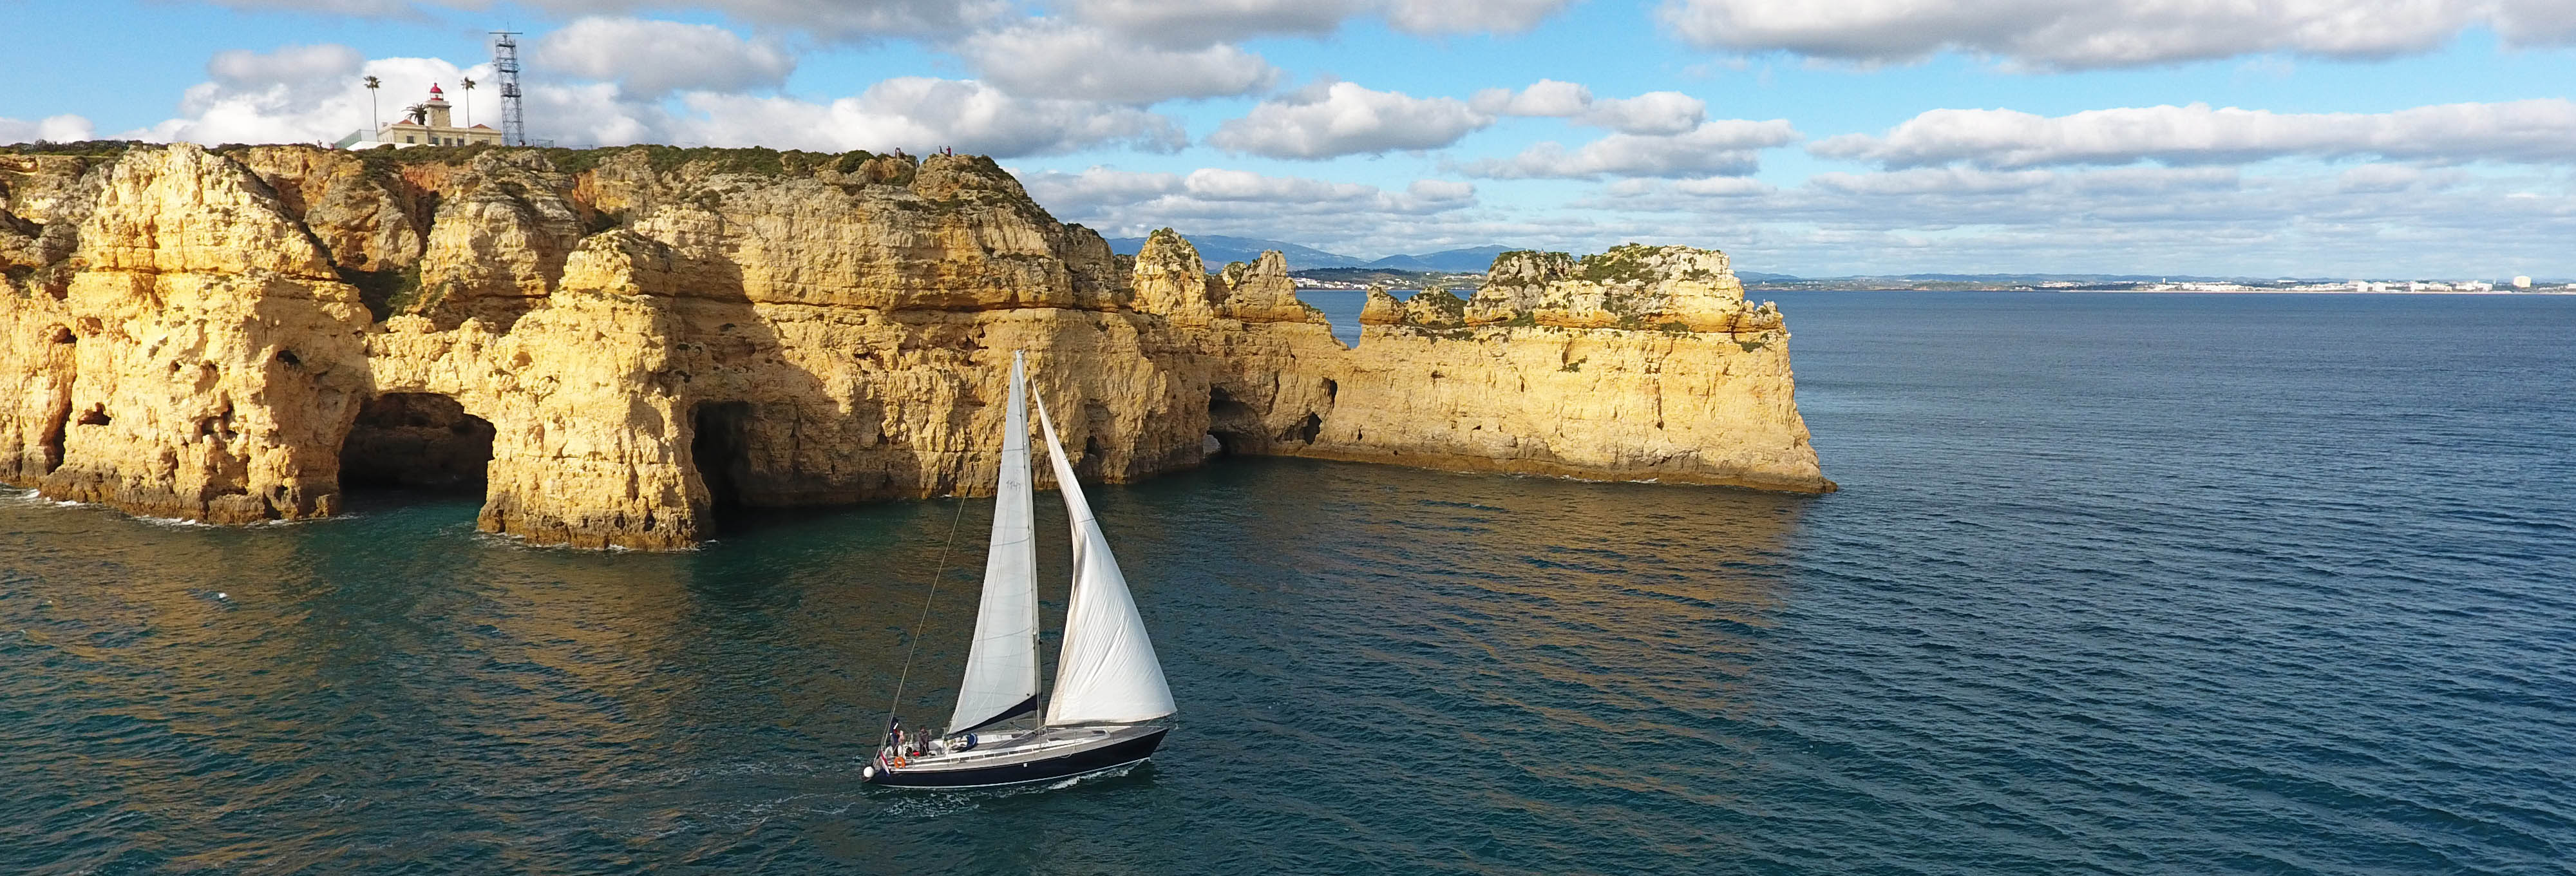 Algarve Boat Rental Cover Image